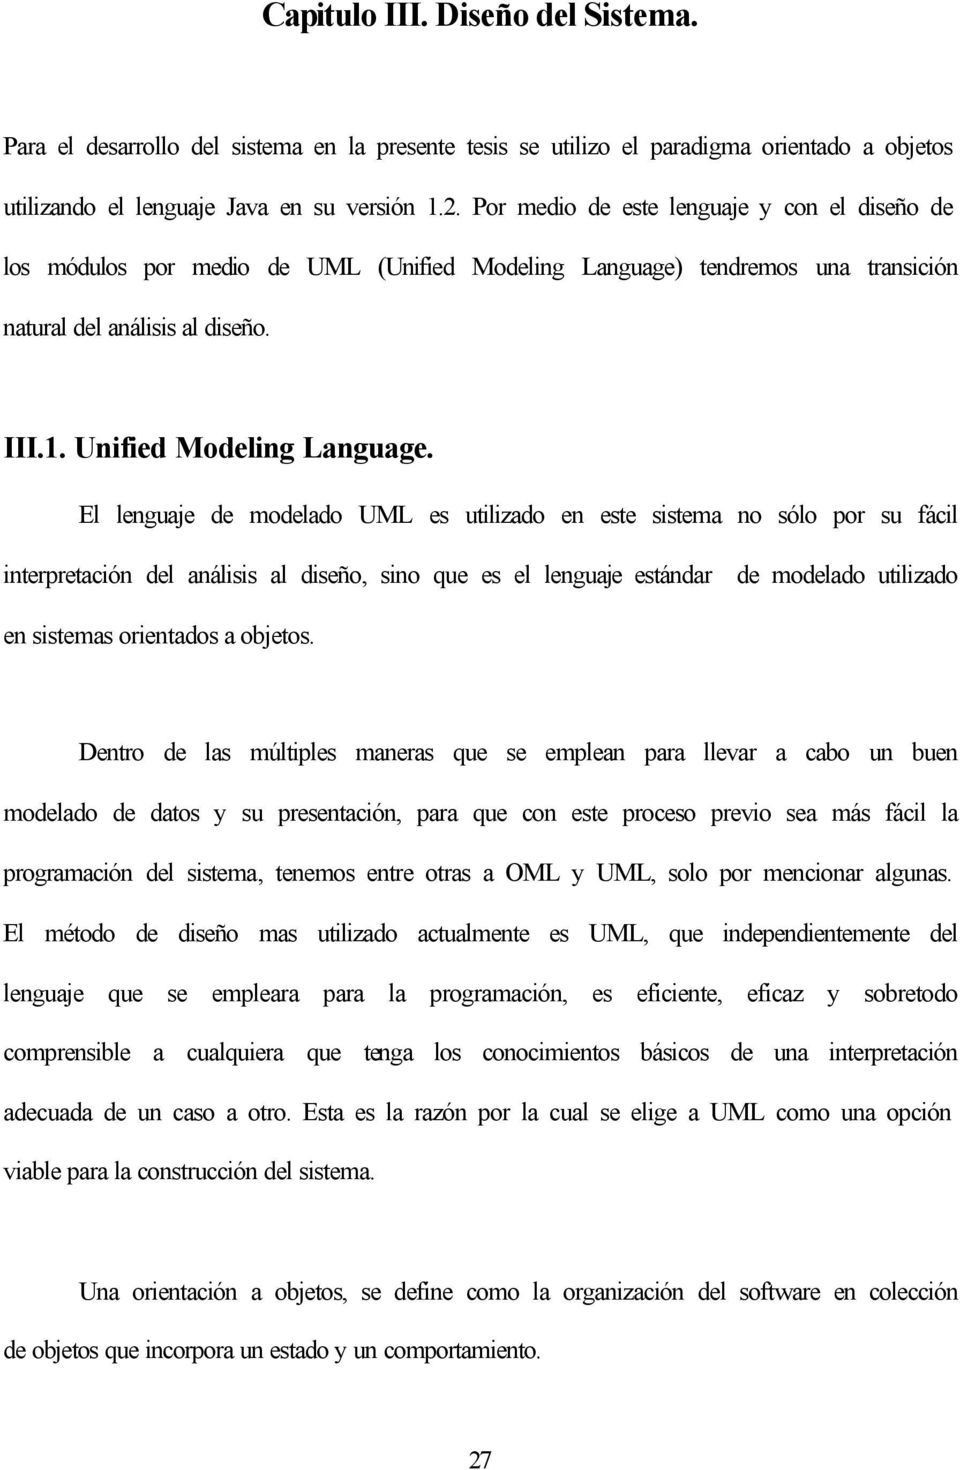 El lenguaje de modelado UML es utilizado en este sistema no sólo por su fácil interpretación del análisis al diseño, sino que es el lenguaje estándar de modelado utilizado en sistemas orientados a